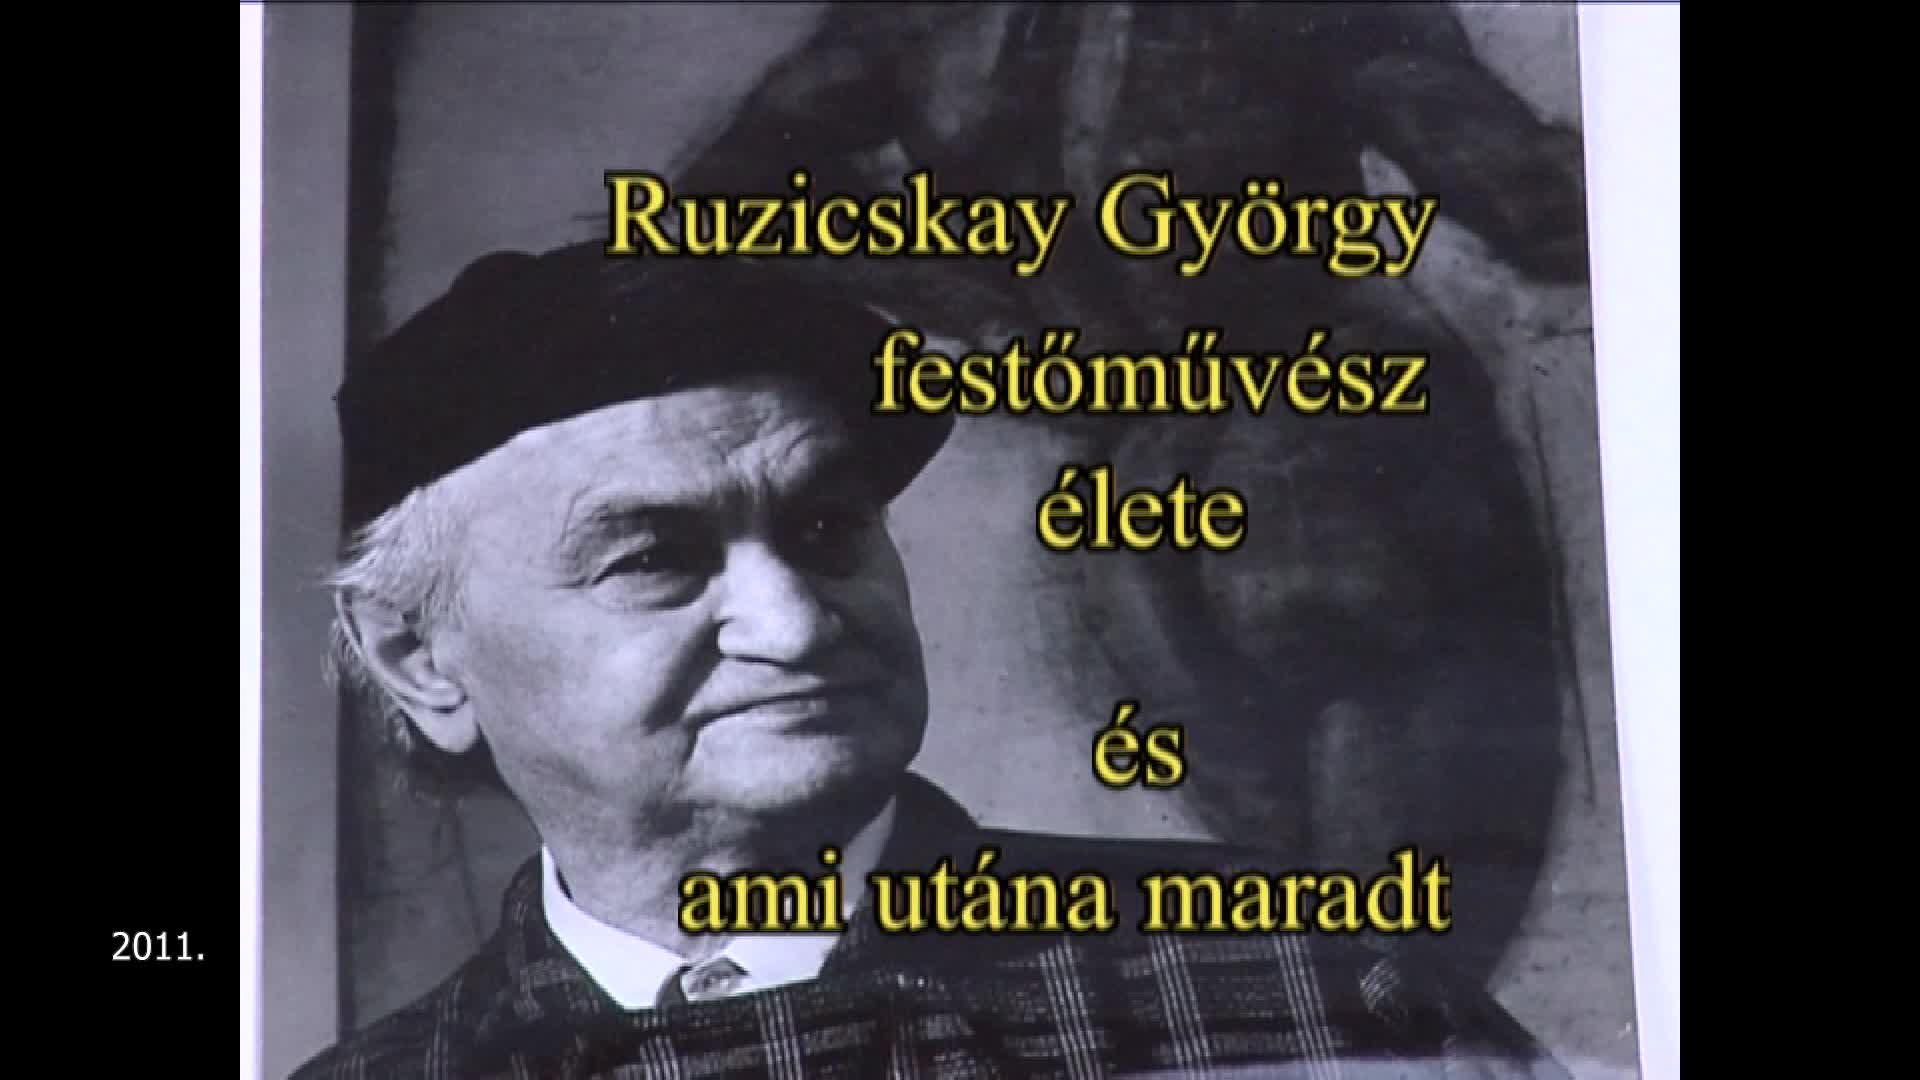 Ruzicskay György festőművész élete és ami utána maradt